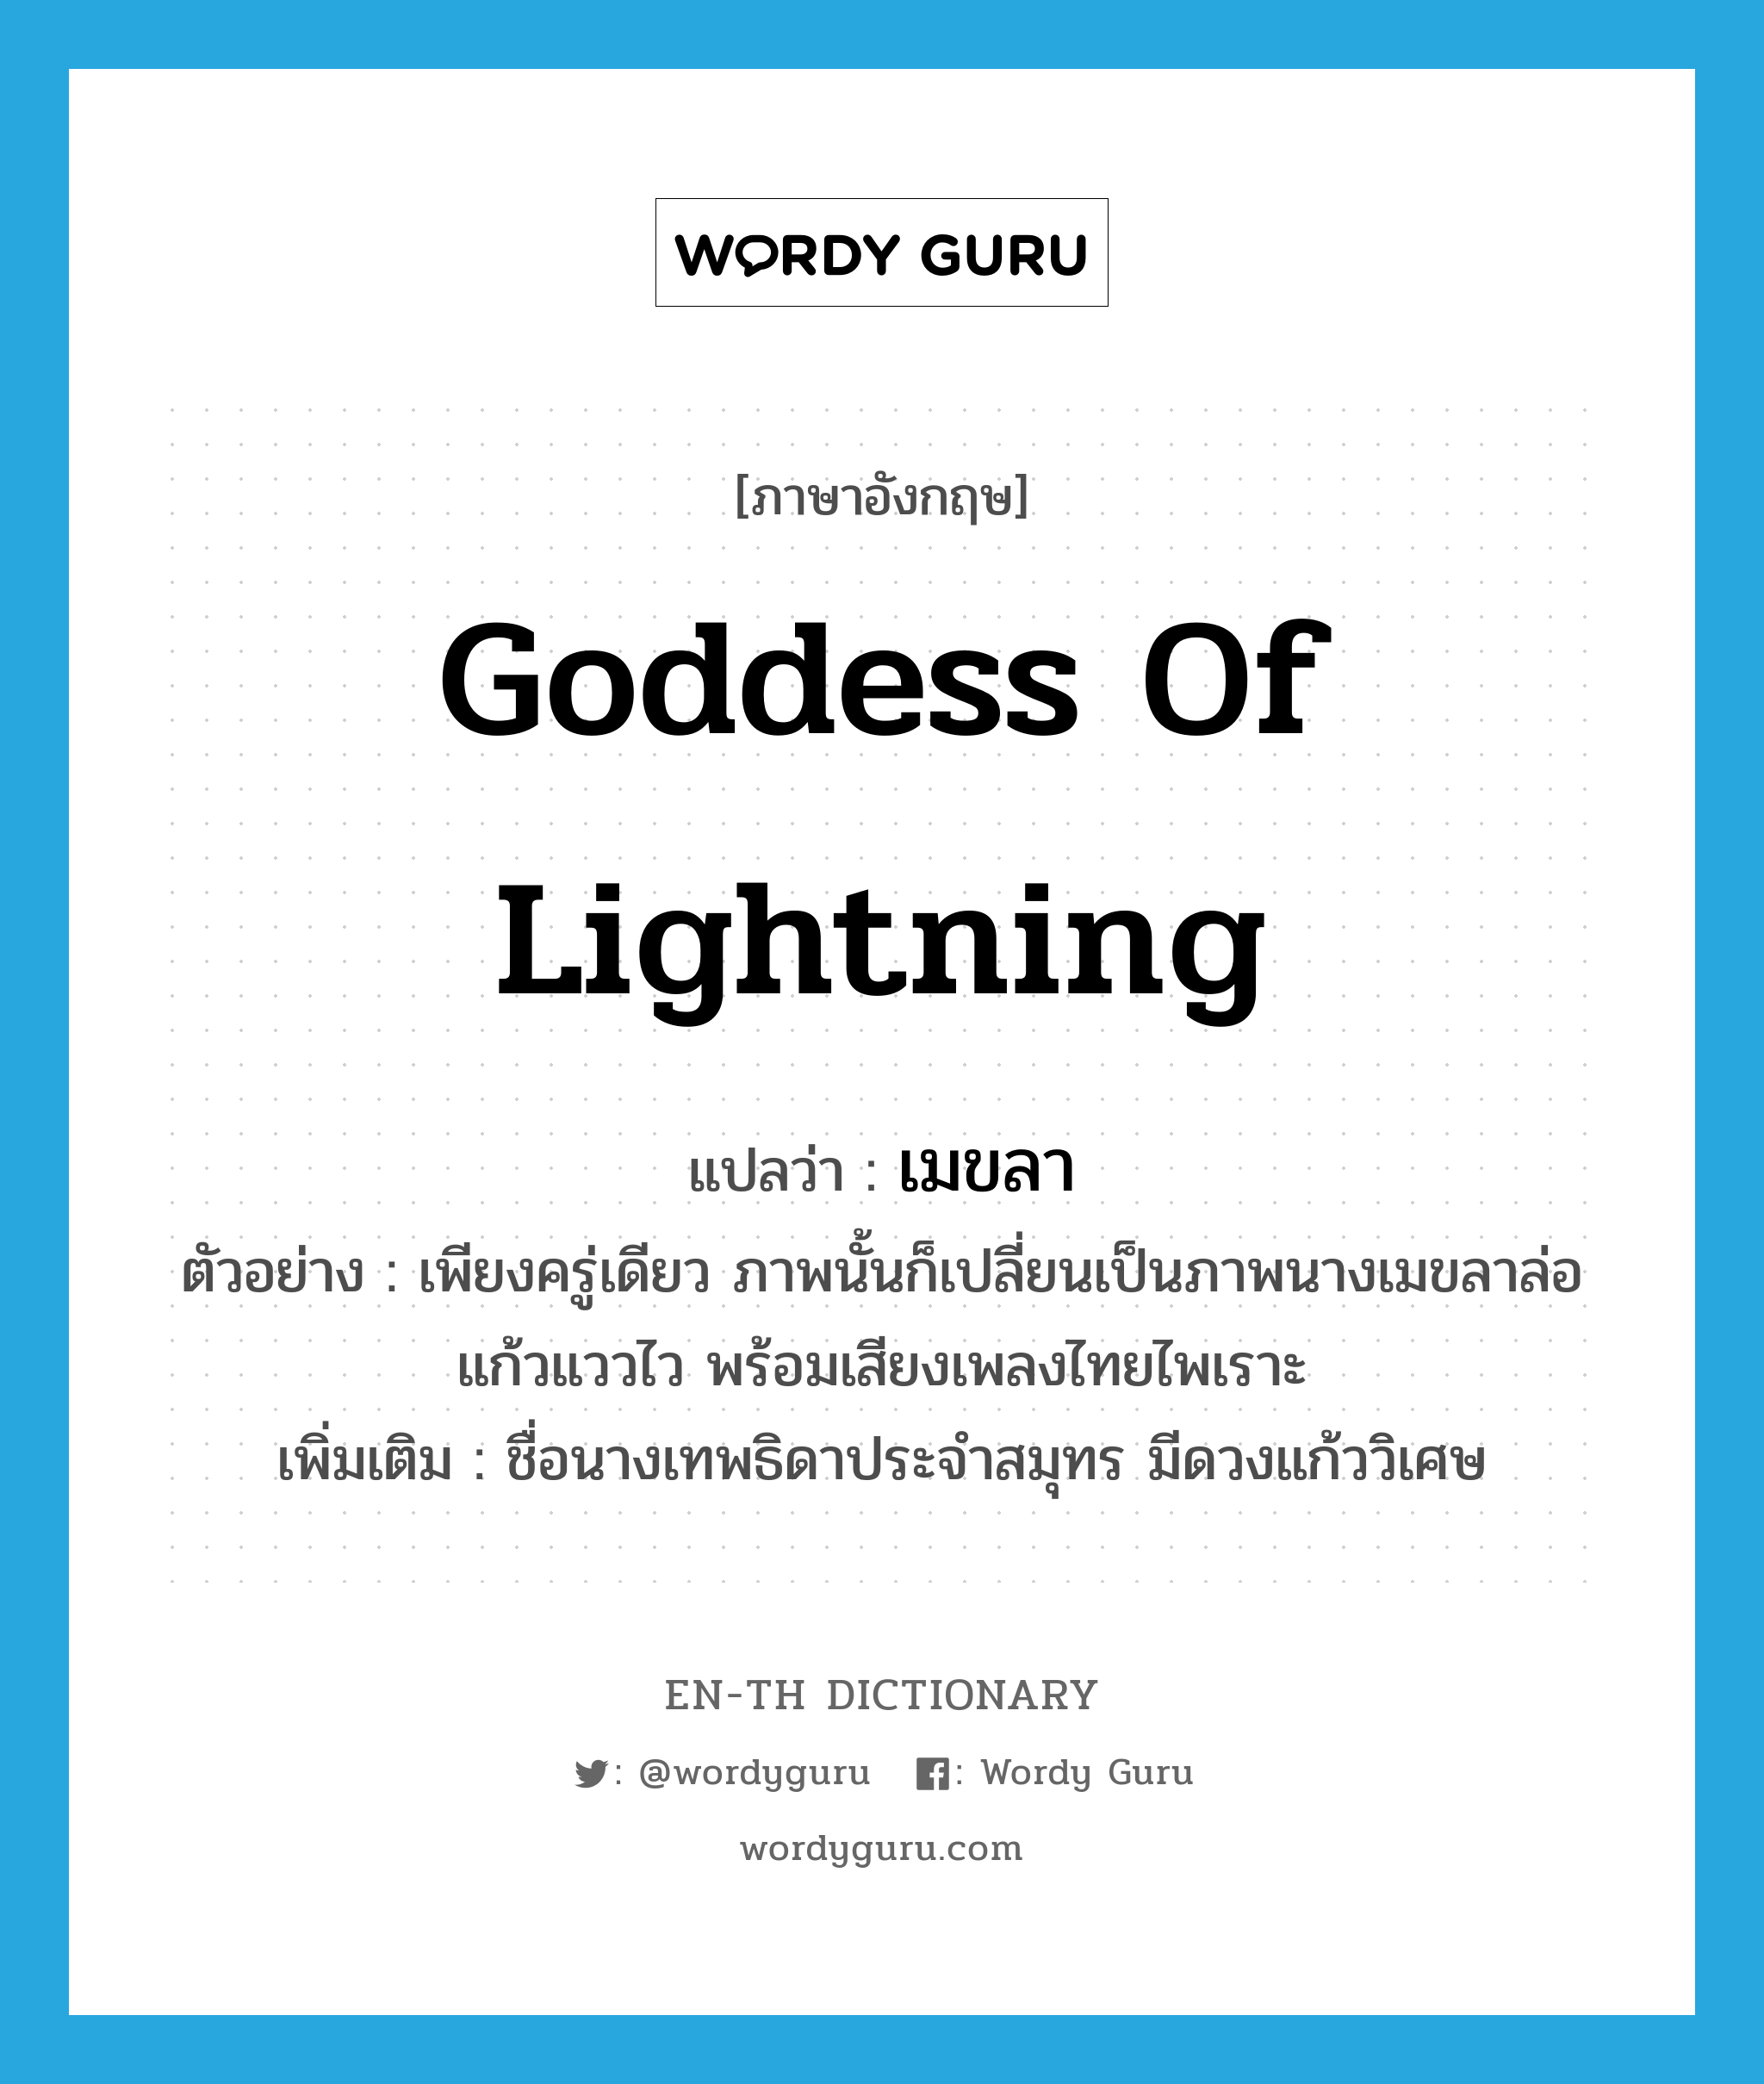 เมขลา ภาษาอังกฤษ?, คำศัพท์ภาษาอังกฤษ เมขลา แปลว่า goddess of lightning ประเภท N ตัวอย่าง เพียงครู่เดียว ภาพนั้นก็เปลี่ยนเป็นภาพนางเมขลาล่อแก้วแววไว พร้อมเสียงเพลงไทยไพเราะ เพิ่มเติม ชื่อนางเทพธิดาประจำสมุทร มีดวงแก้ววิเศษ หมวด N